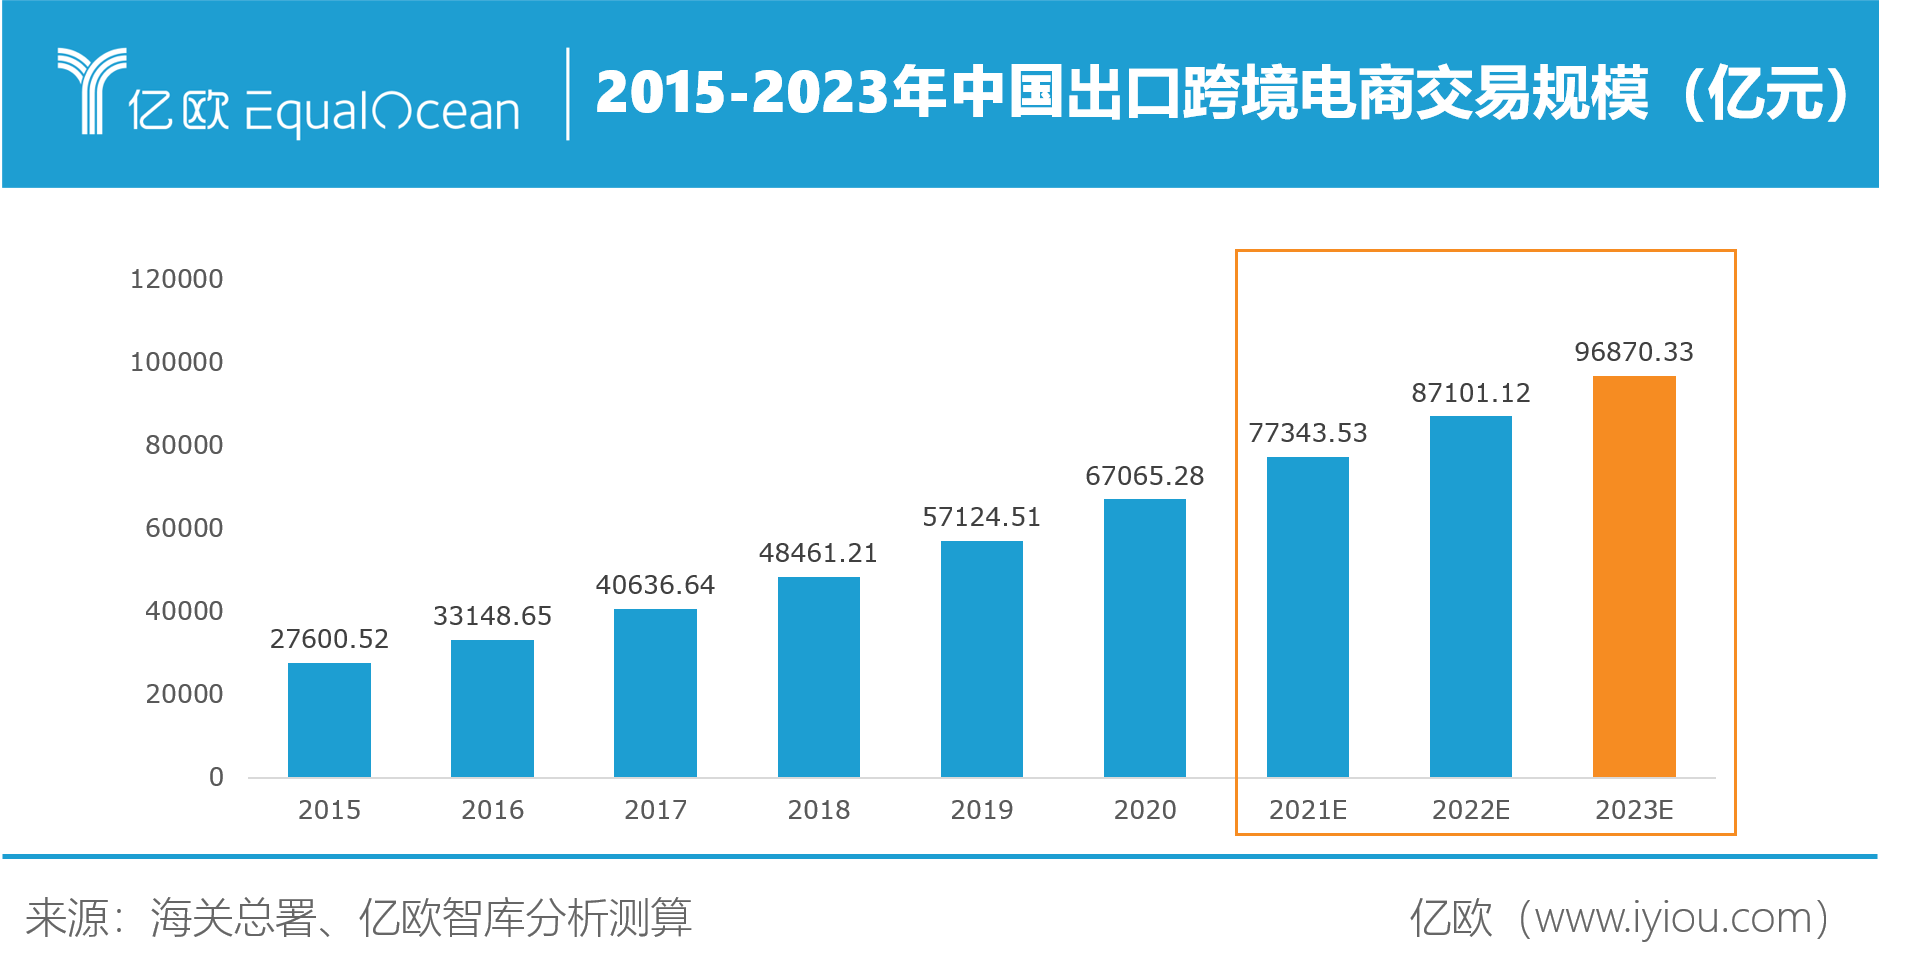 2021年第1季度中国跨境进口零售电商市场规模为998.5亿元 试点城市大扩容利好行业整体发展-易观分析